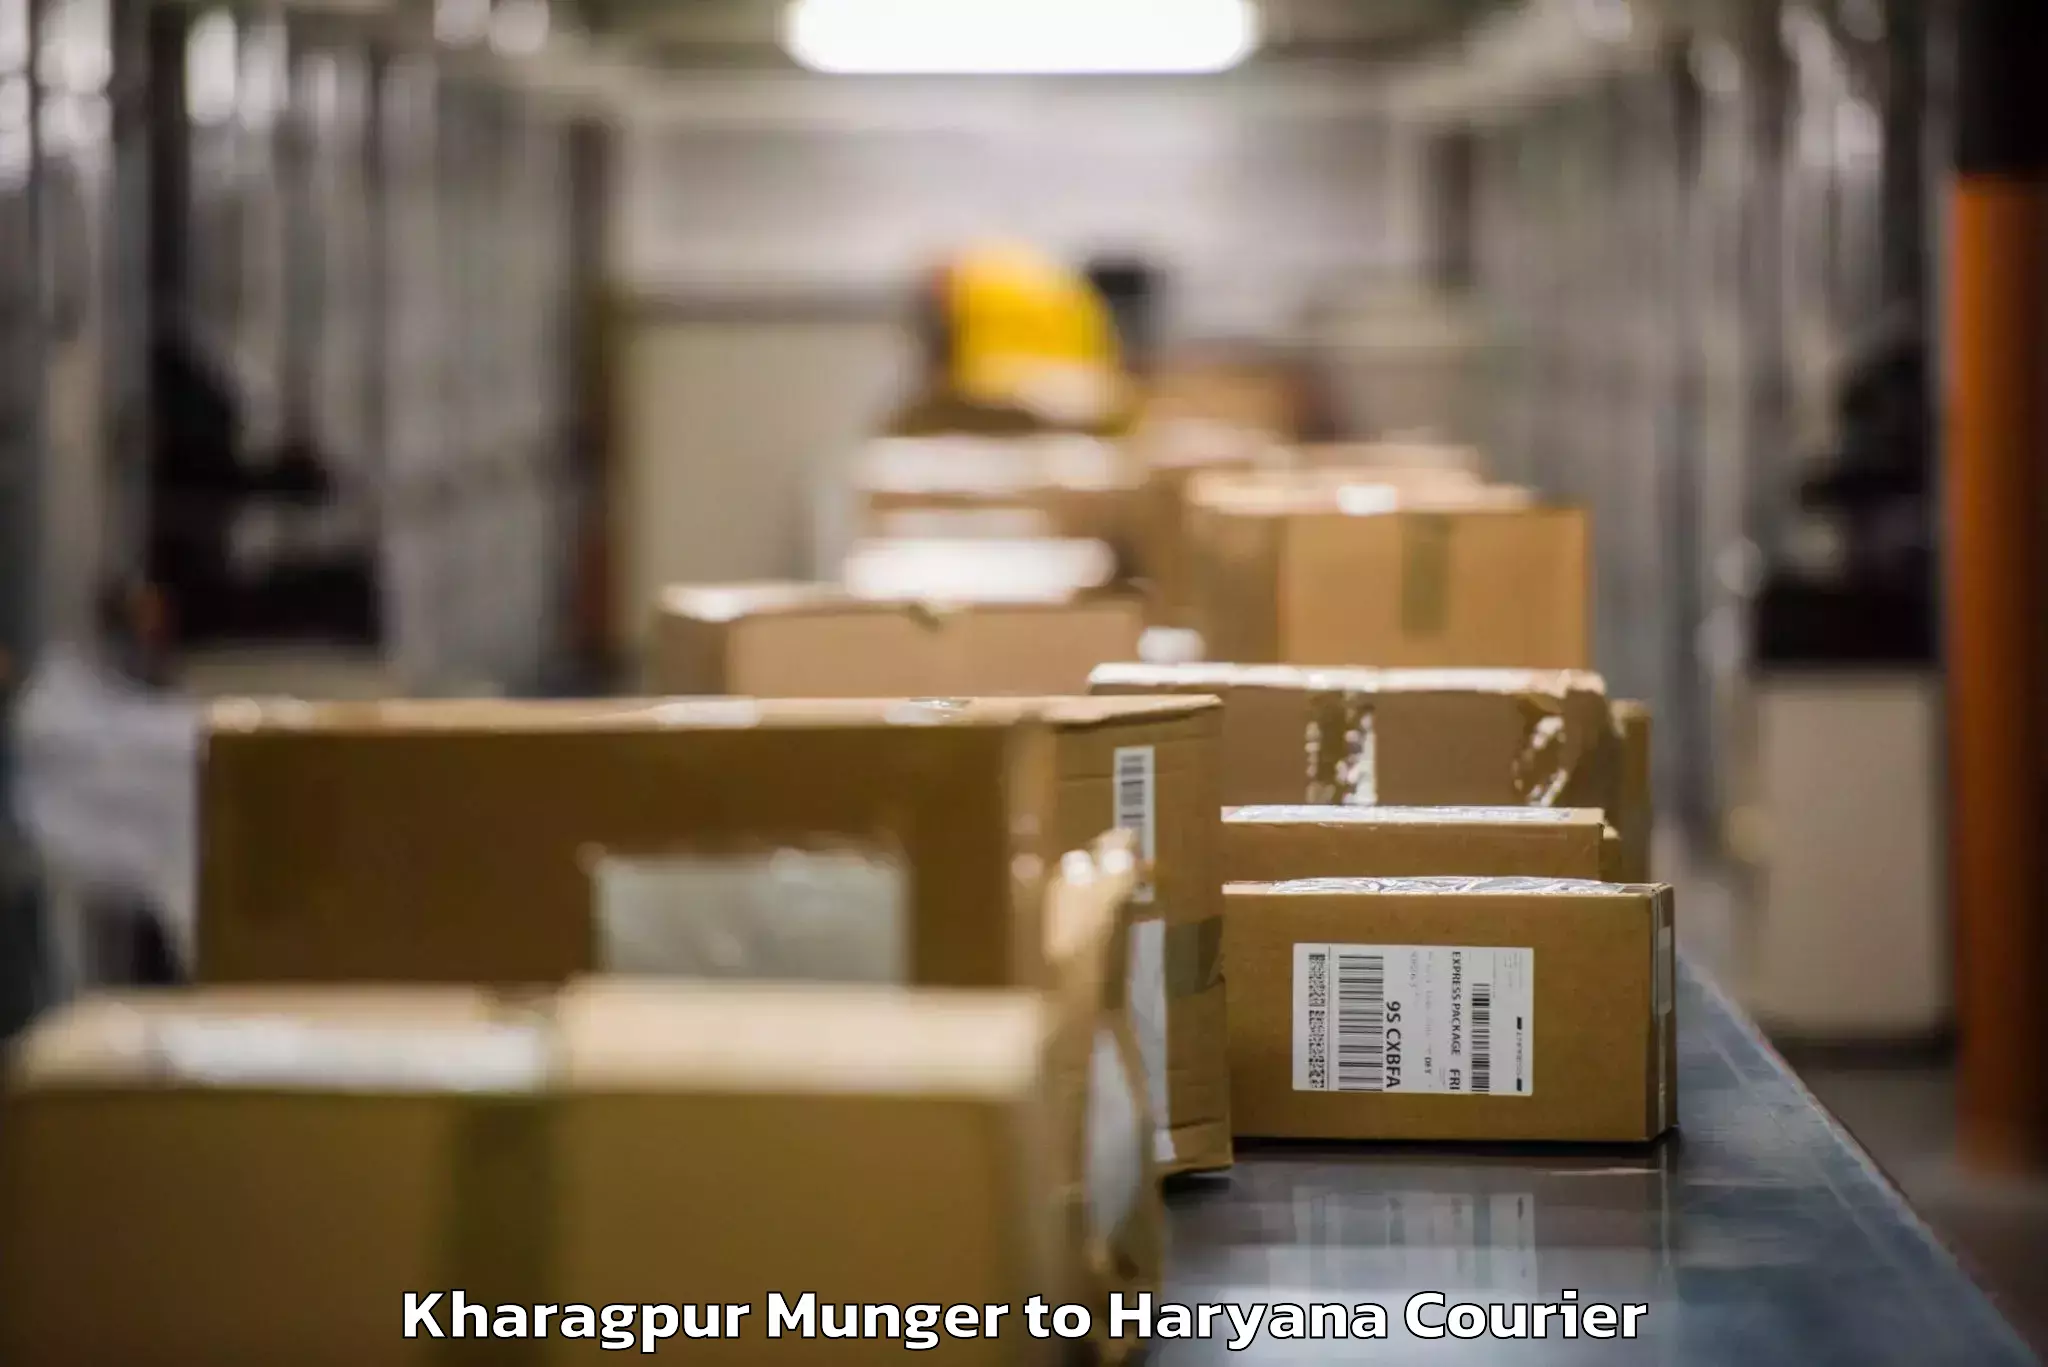 Baggage handling services Kharagpur Munger to Dharuhera